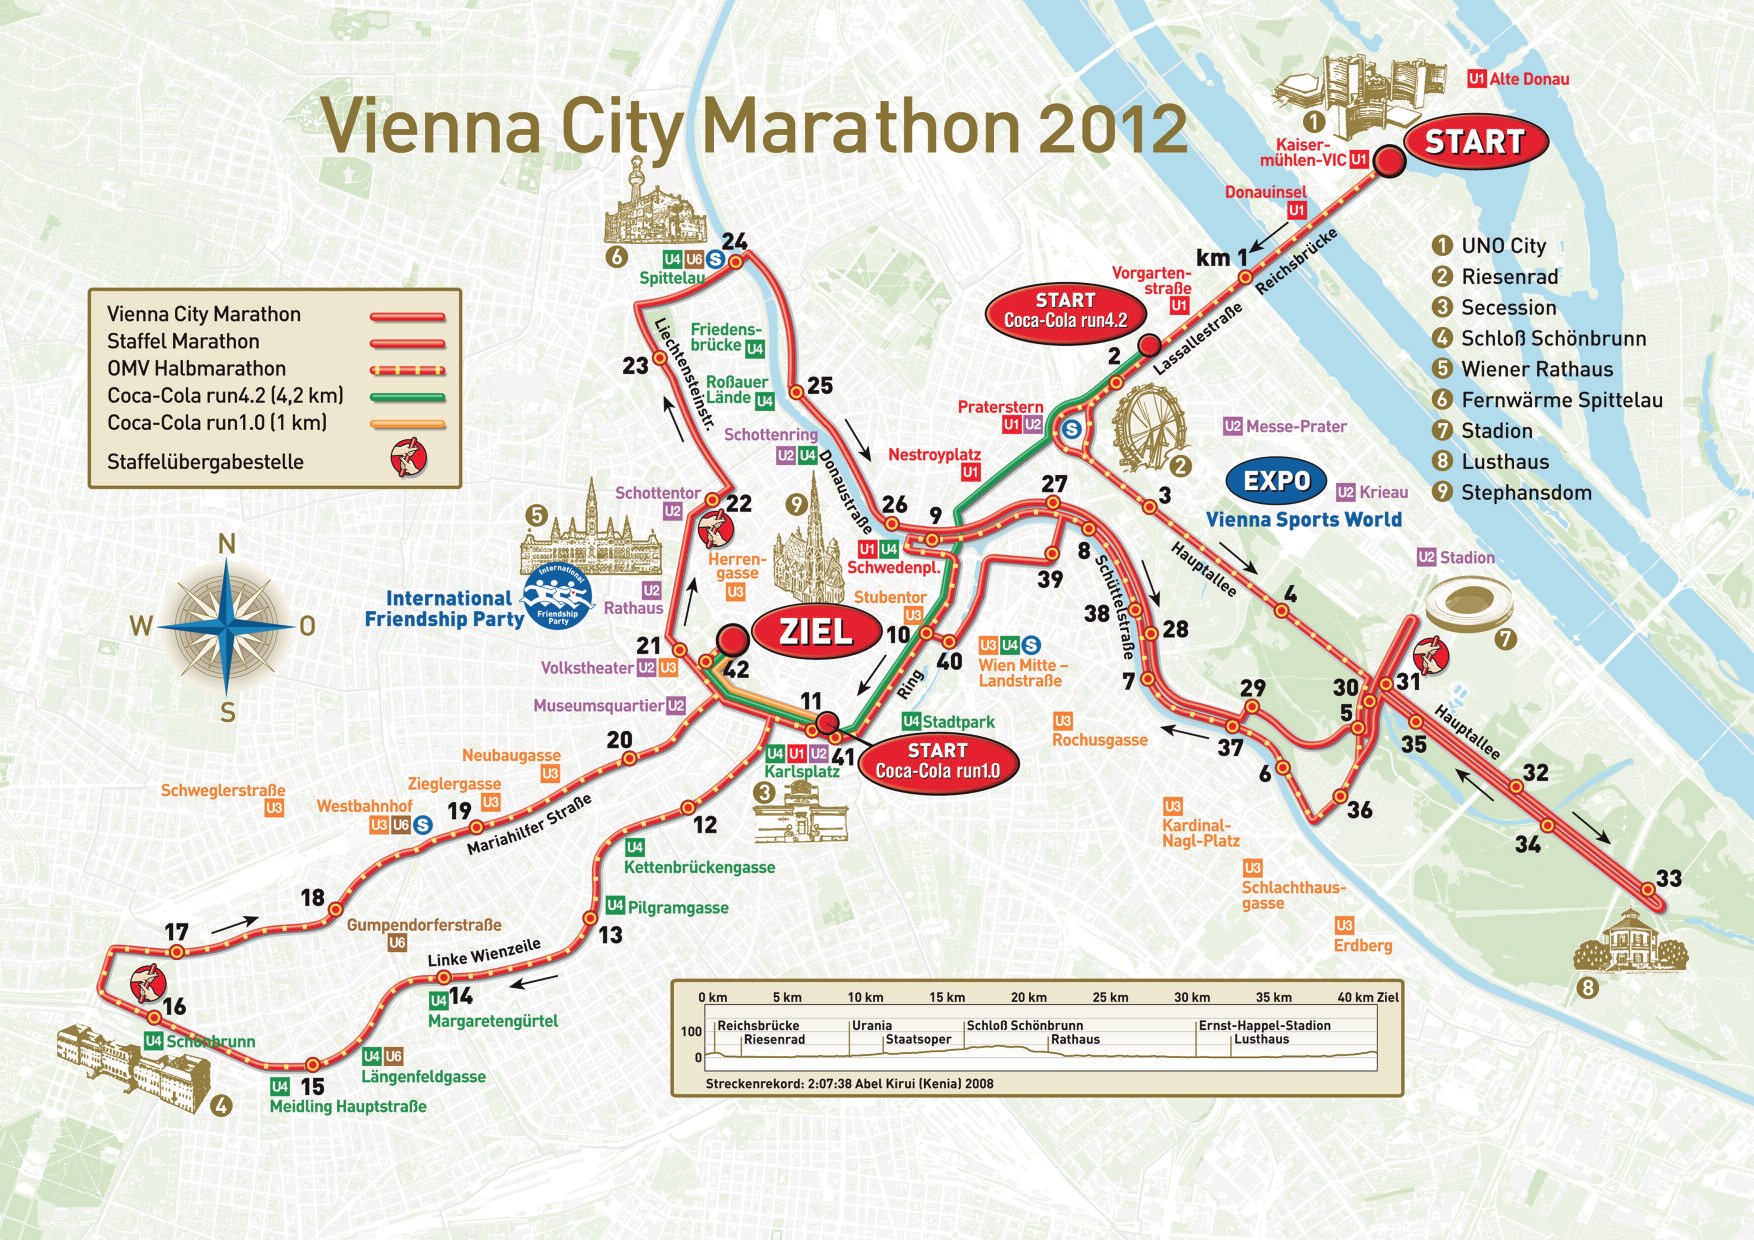 Karte der Strecke des VCM 2012